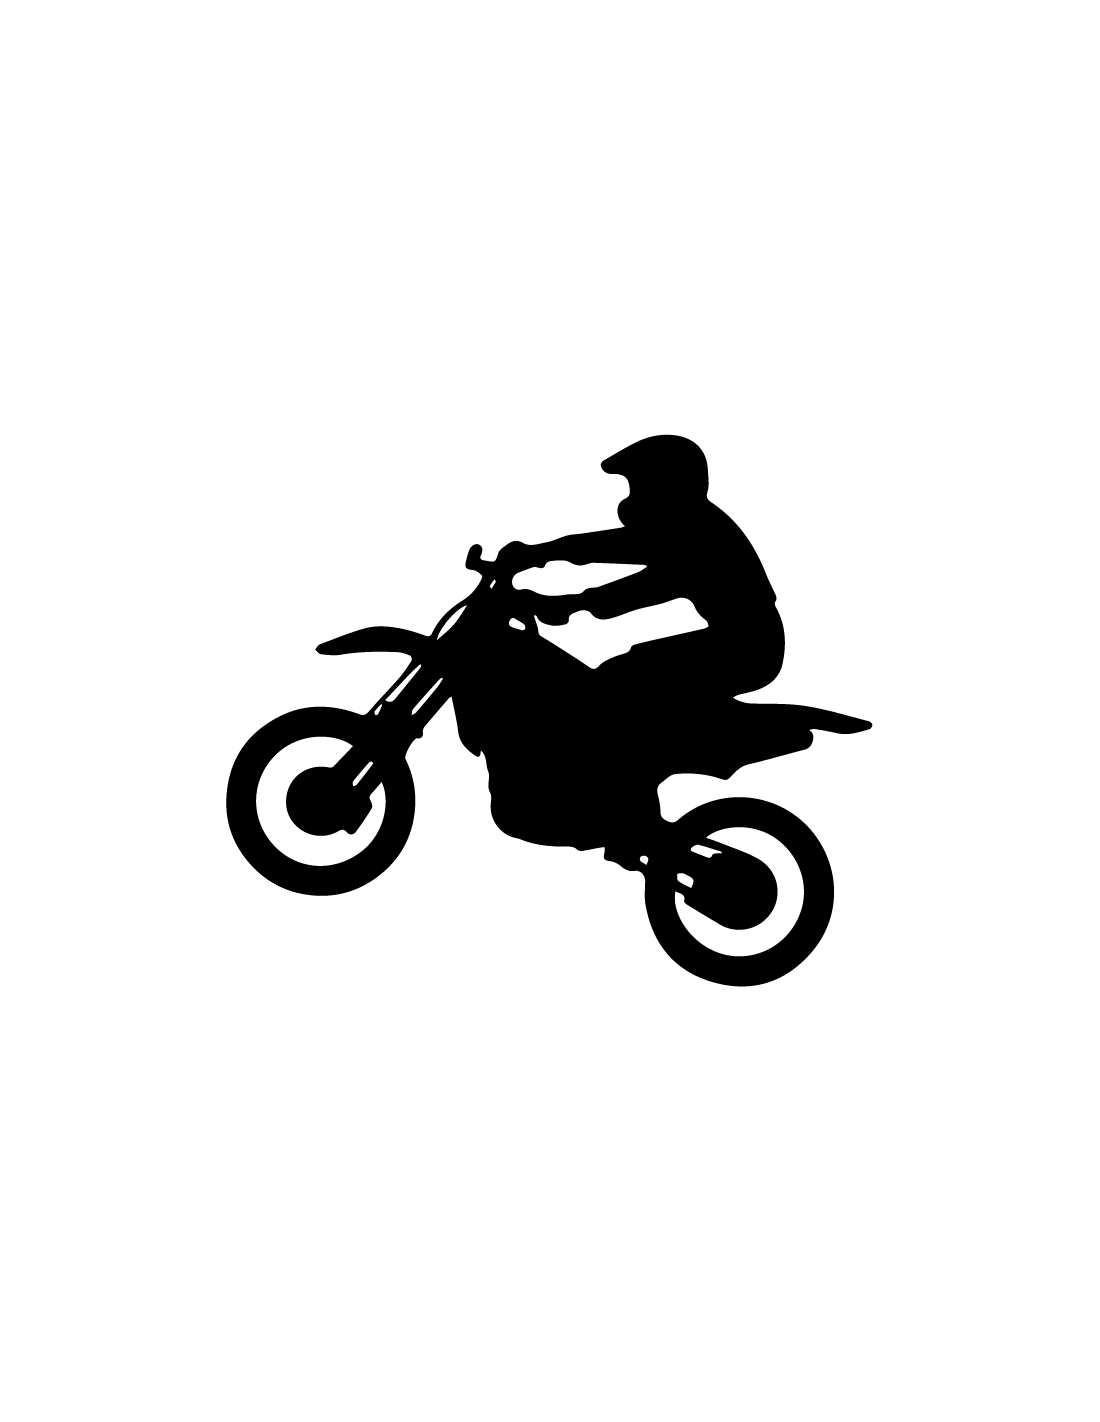 Motocross - Adesivo Prespaziato - AdesiviStore